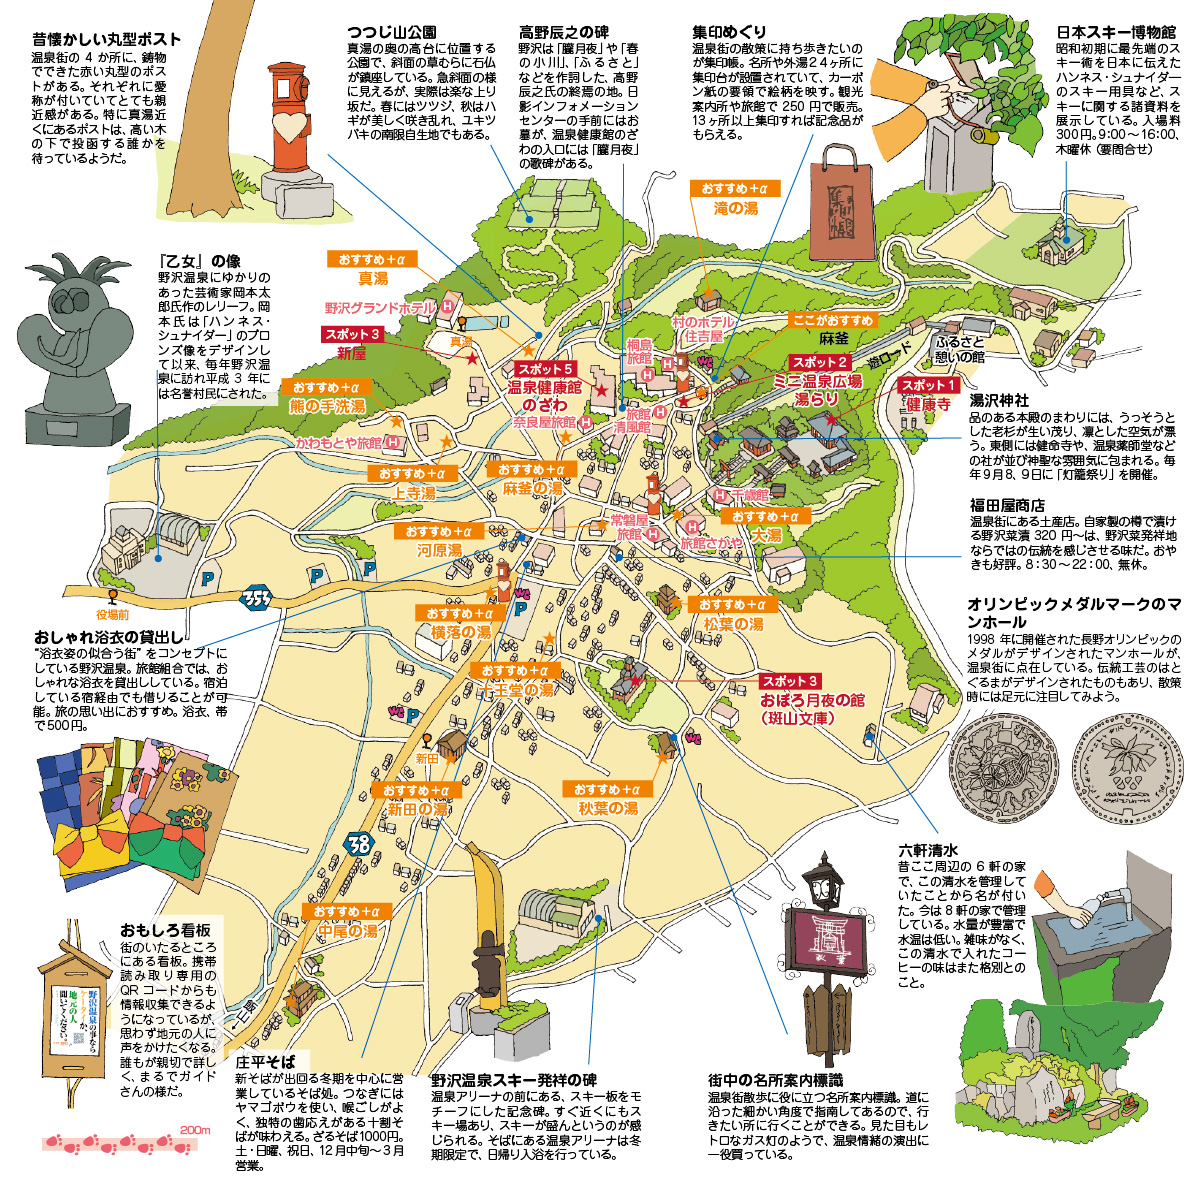 新潟県地図2 パワーポイント フリー素材 無料素材のdigipot